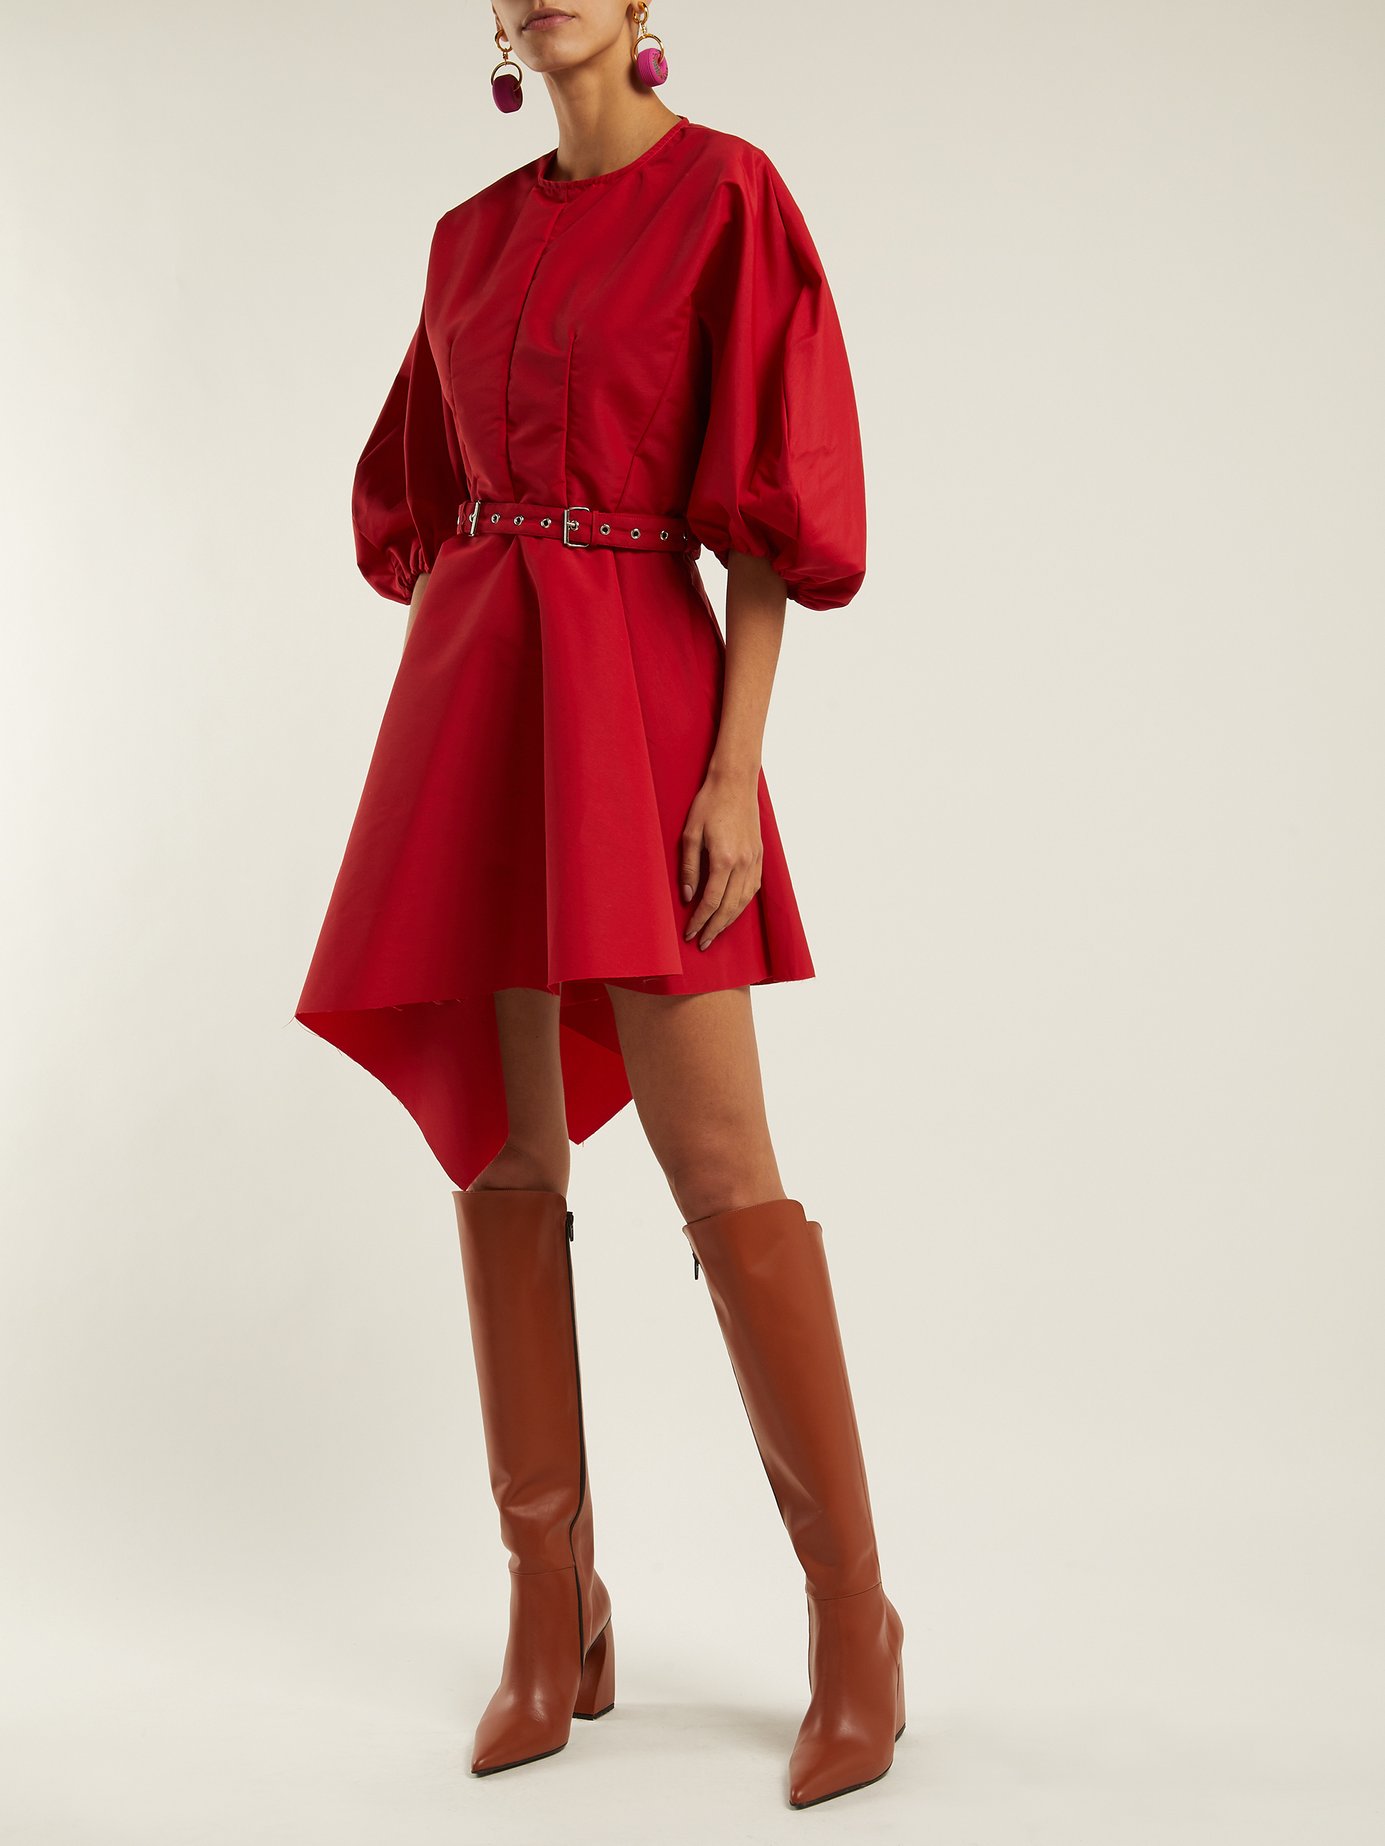 Marques'Almeida - Asymmetric Belted Taffeta Dress - Red | FASHION STYLE FAN